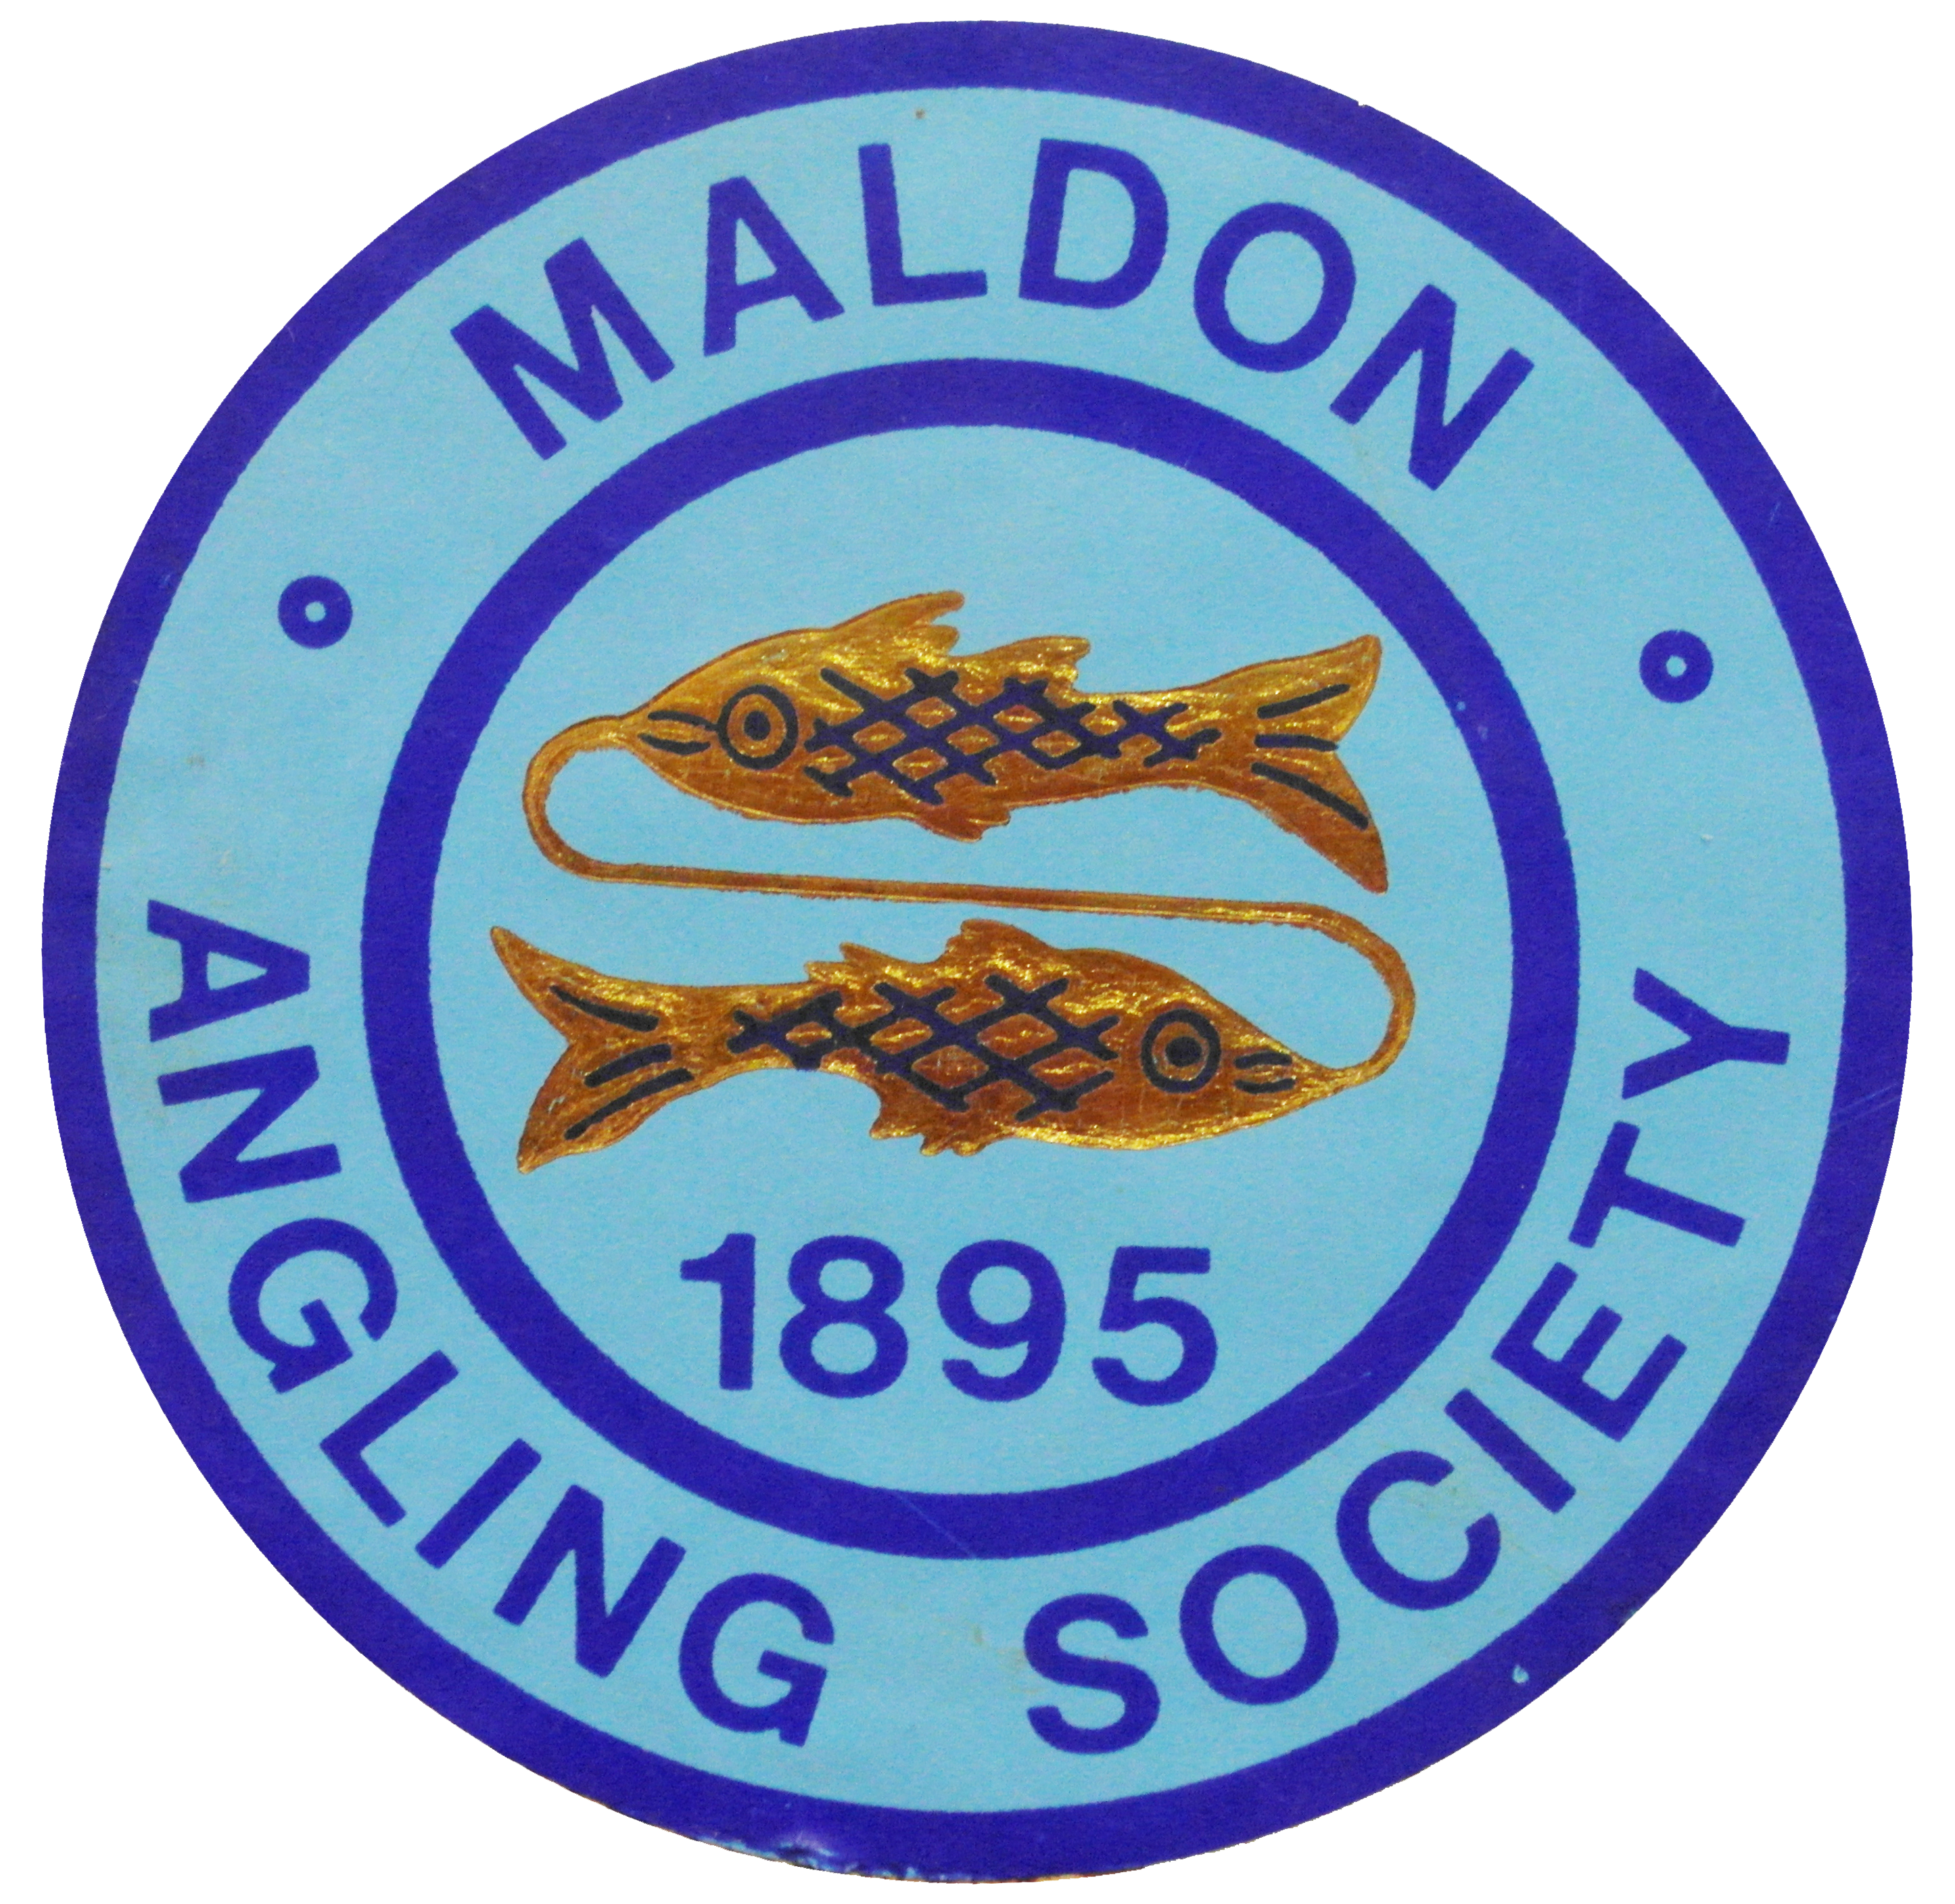 Maldon Angling Society